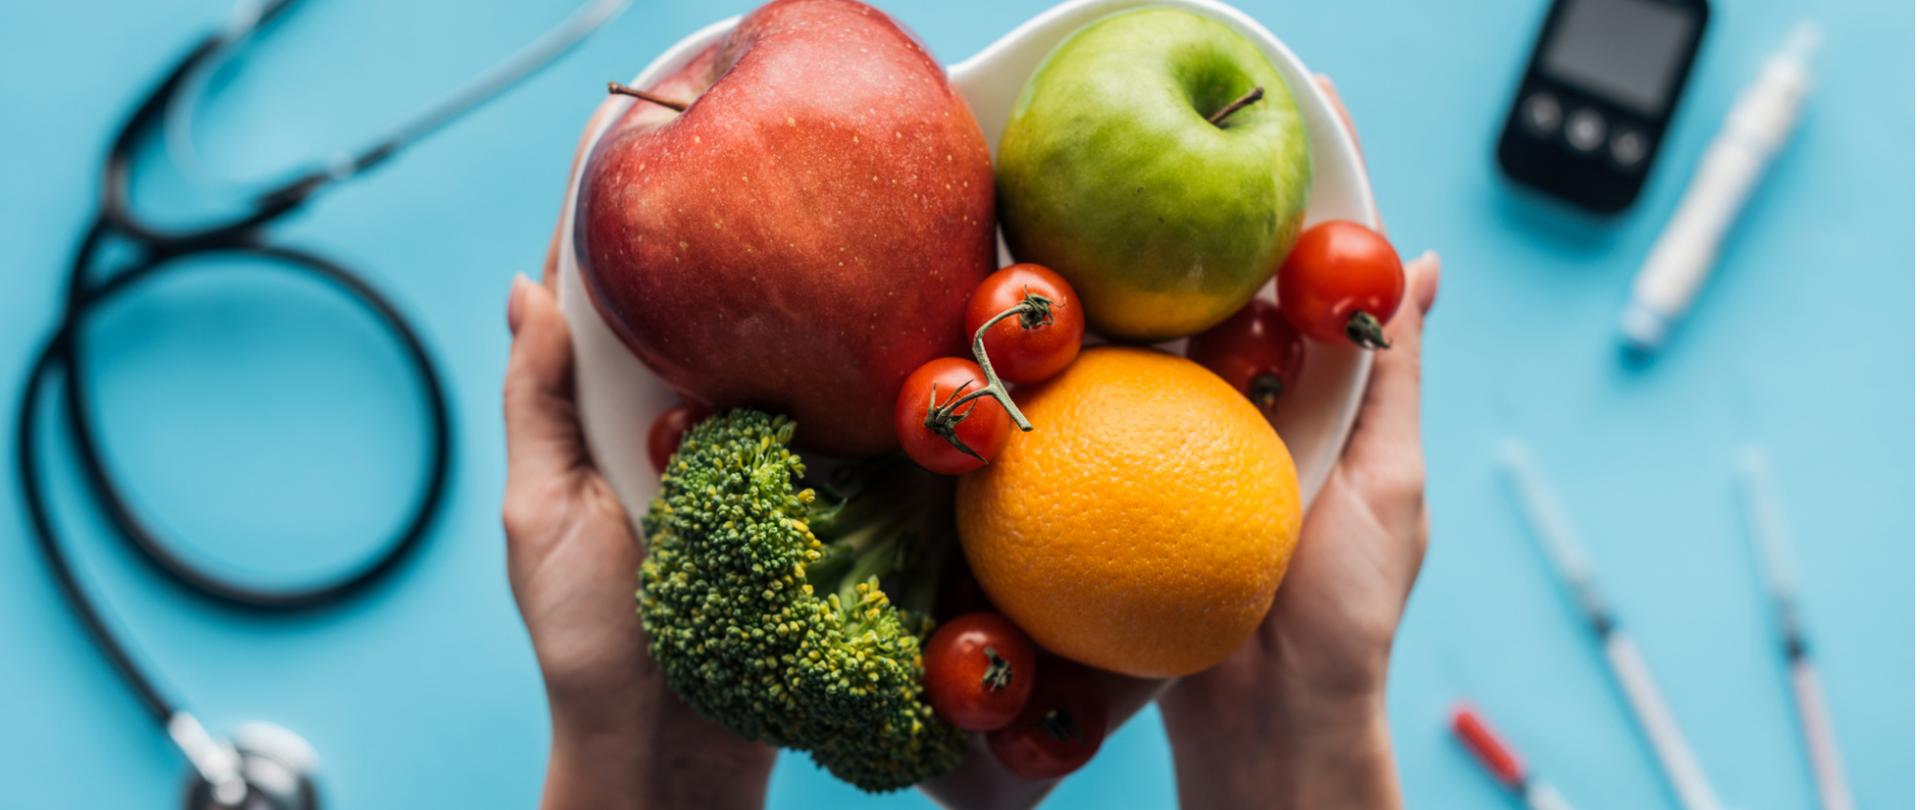 Na zdjęciu w centrum jest widoczna miska trzymana w dłoniach a w niej owoce i warzywa. W tle widać stetoskop, strzykawki i glukometr. 